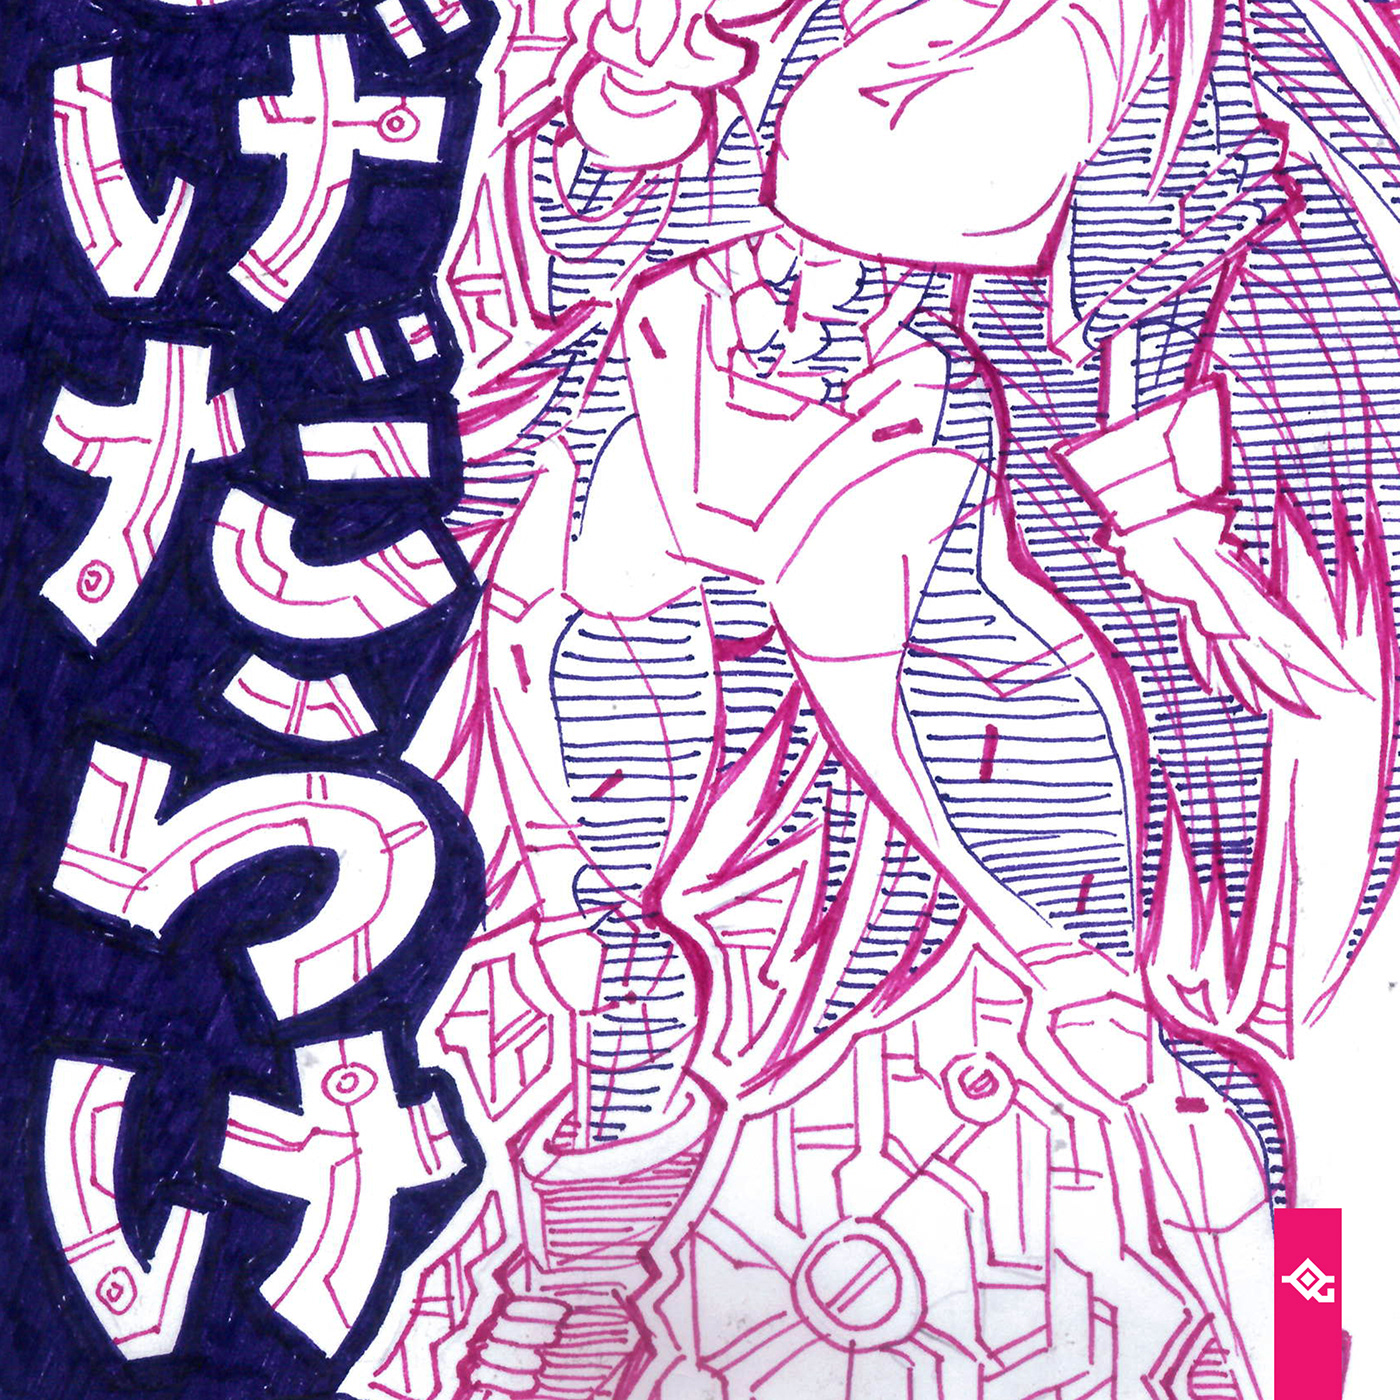 inktober jakeparker sketch challenge manga japan kawaii cute daily sketchy